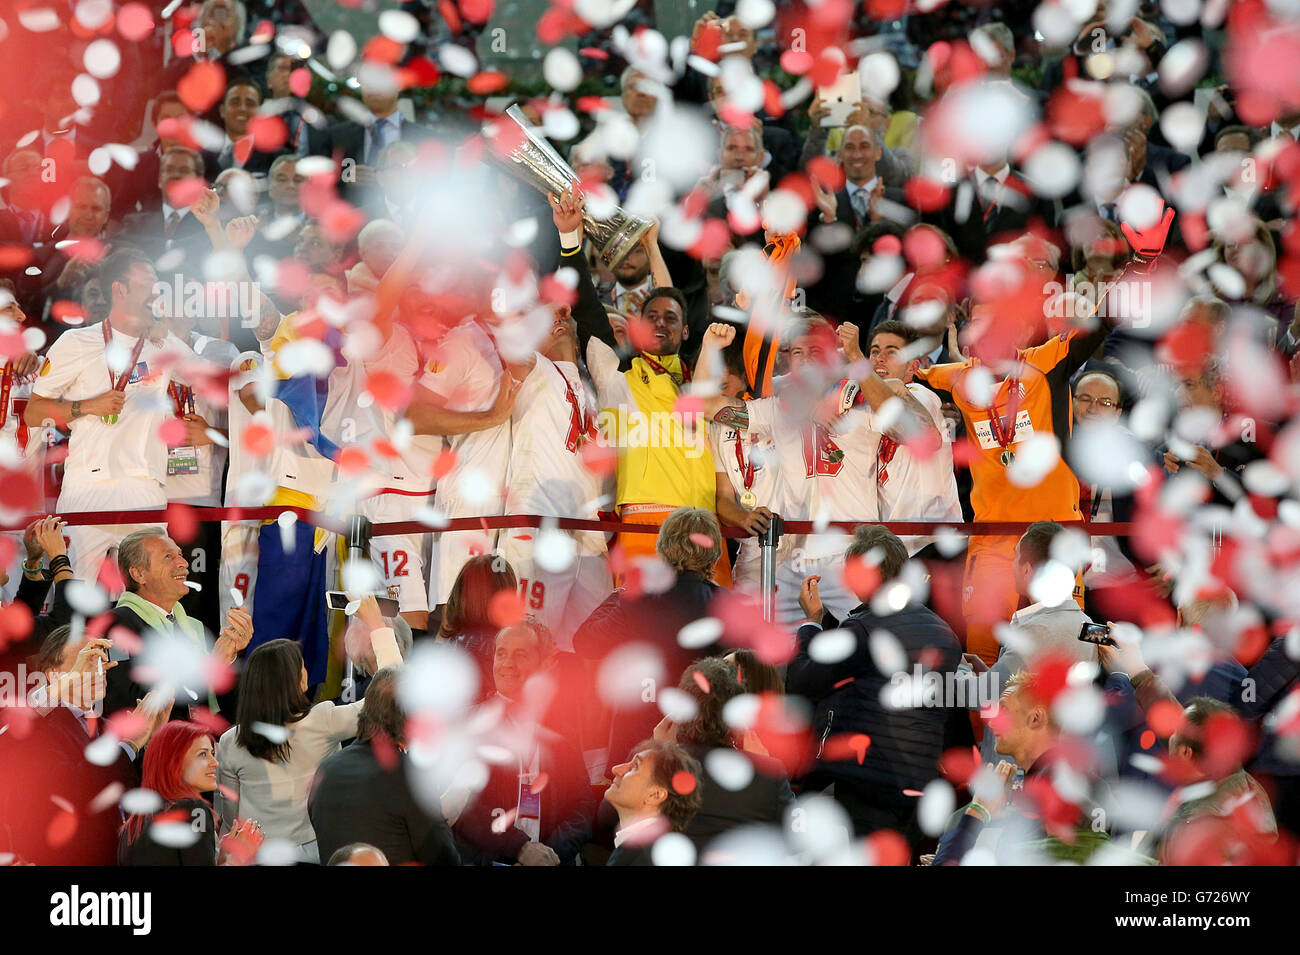 Football - UEFA Europa League - final - Sevilla v Benfica - Juventus Stadium.Le gardien de but de Séville Beto (au centre) lève le trophée de l'UEFA Europa League tandis que la bande de ticker tombe autour d'eux Banque D'Images